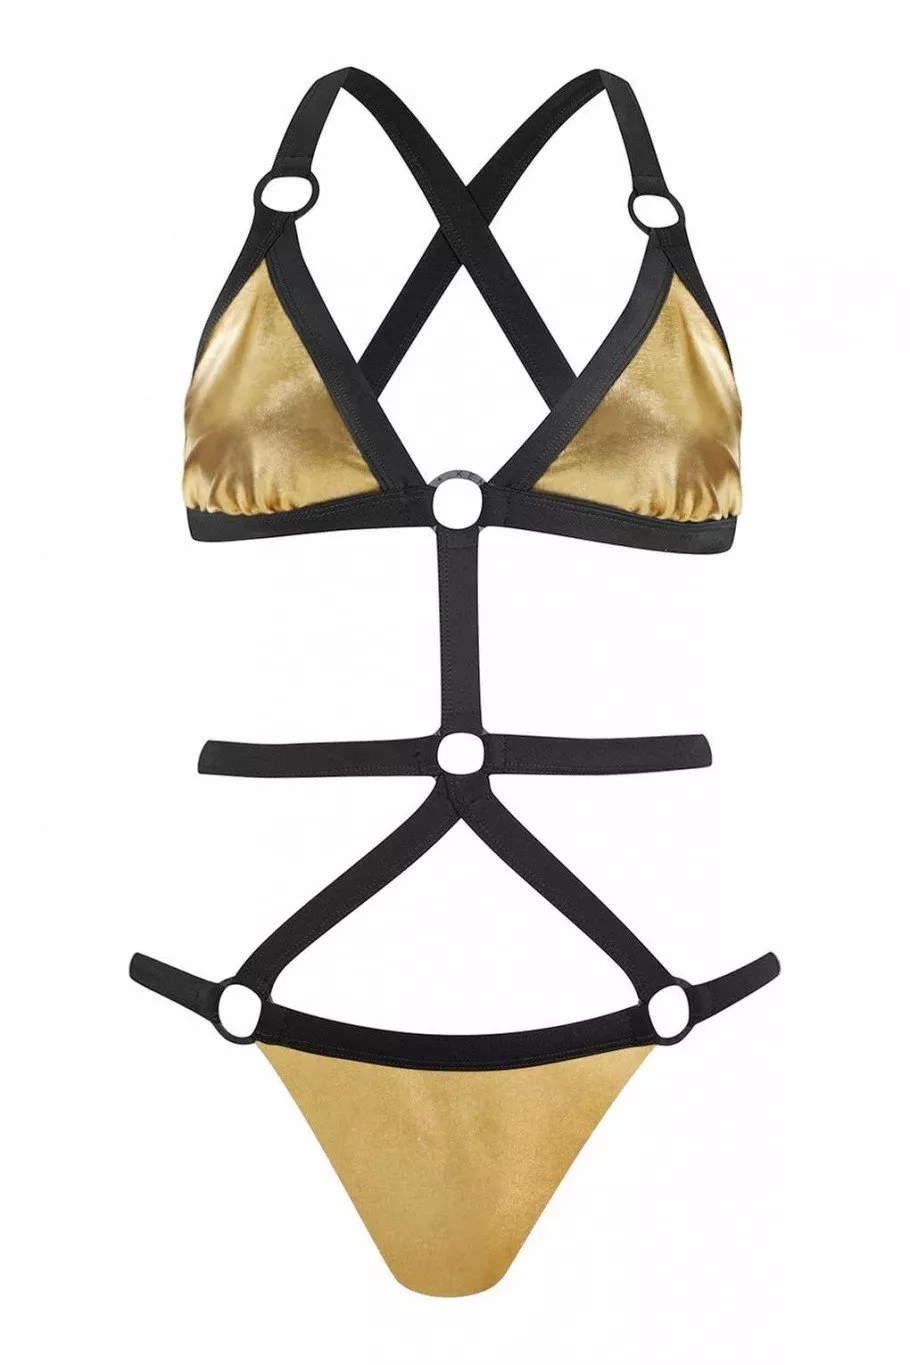 الشقيقتان Jenner تطلقان مجموعة ملابس سباحة بالتعاون مع Topshop